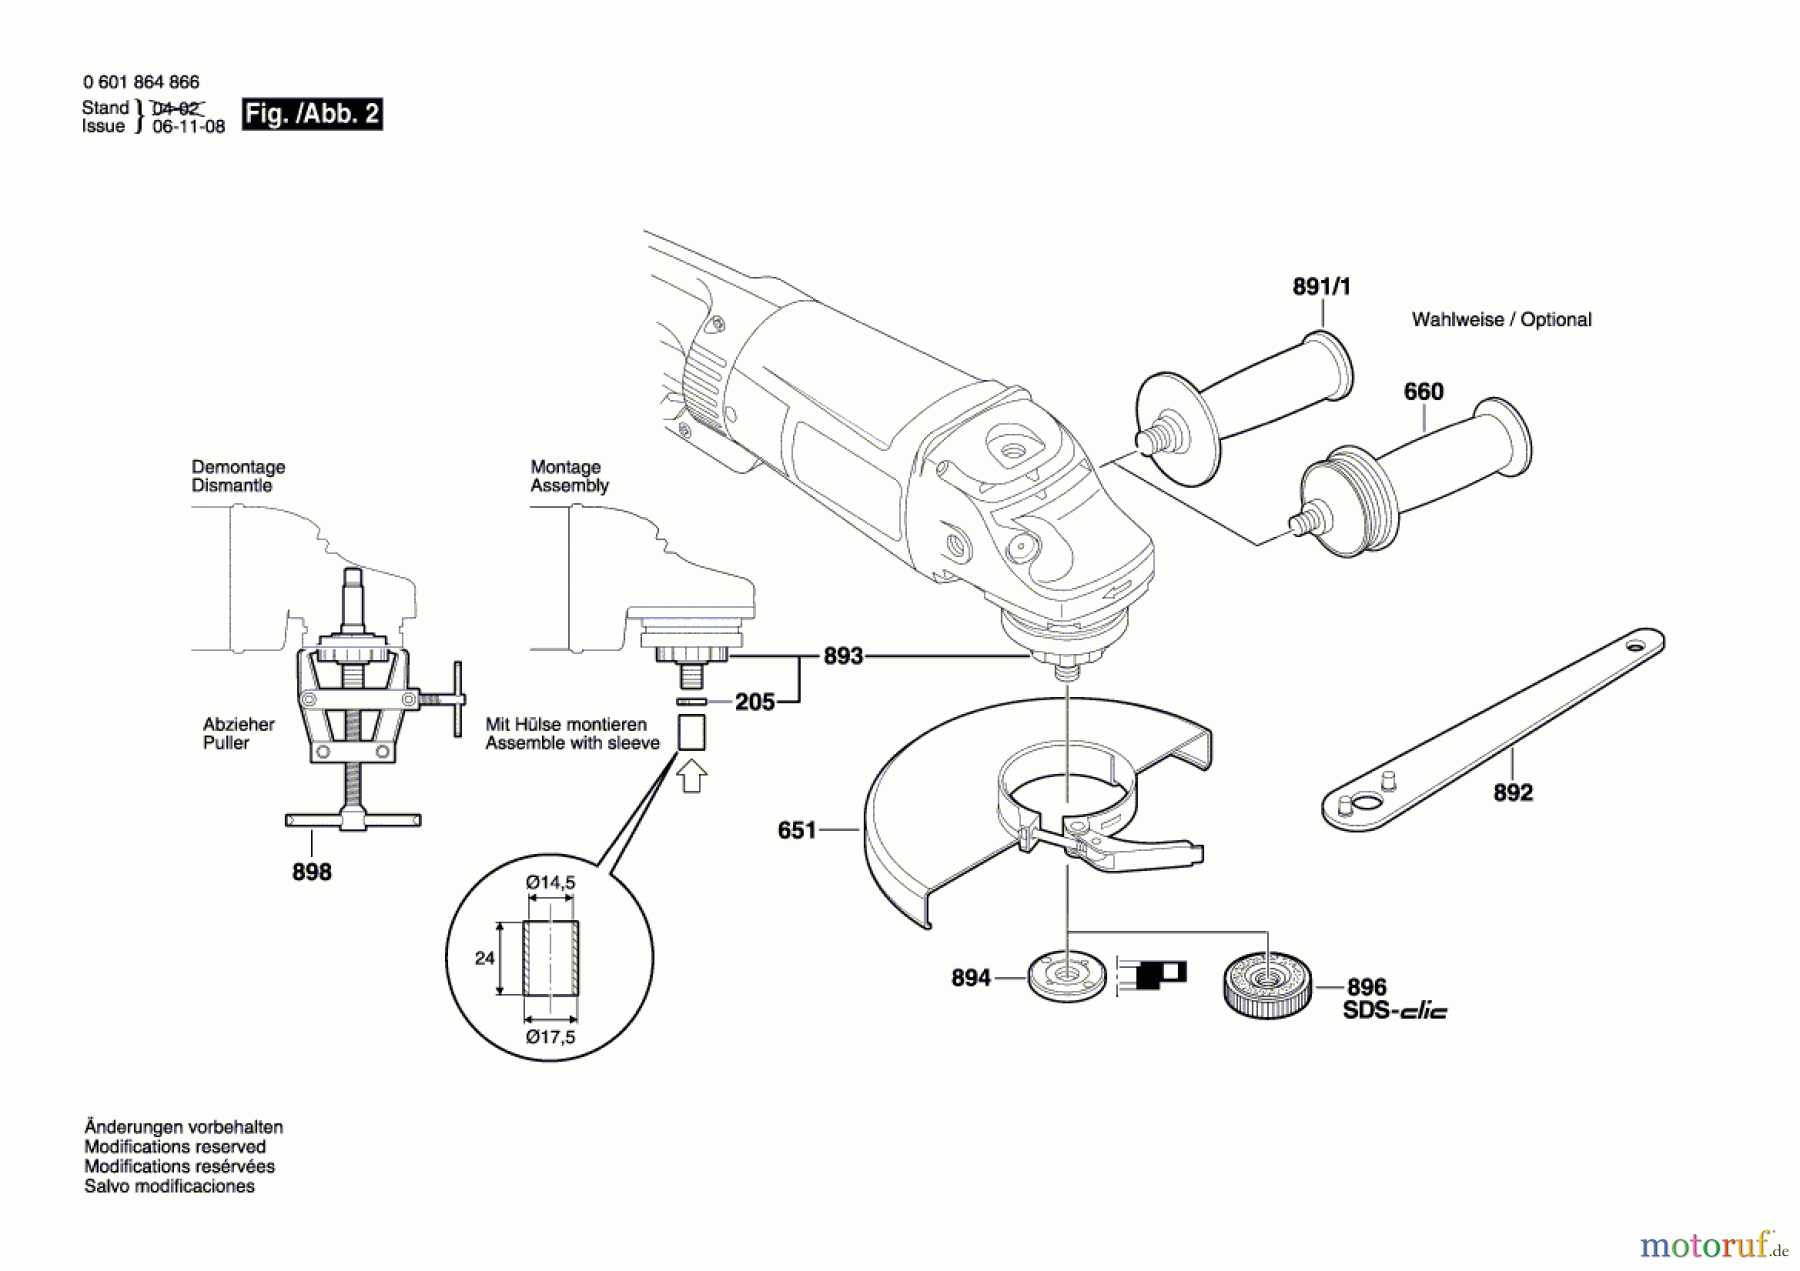  Bosch Werkzeug Winkelschleifer BTI-WKS 230 SE Seite 2